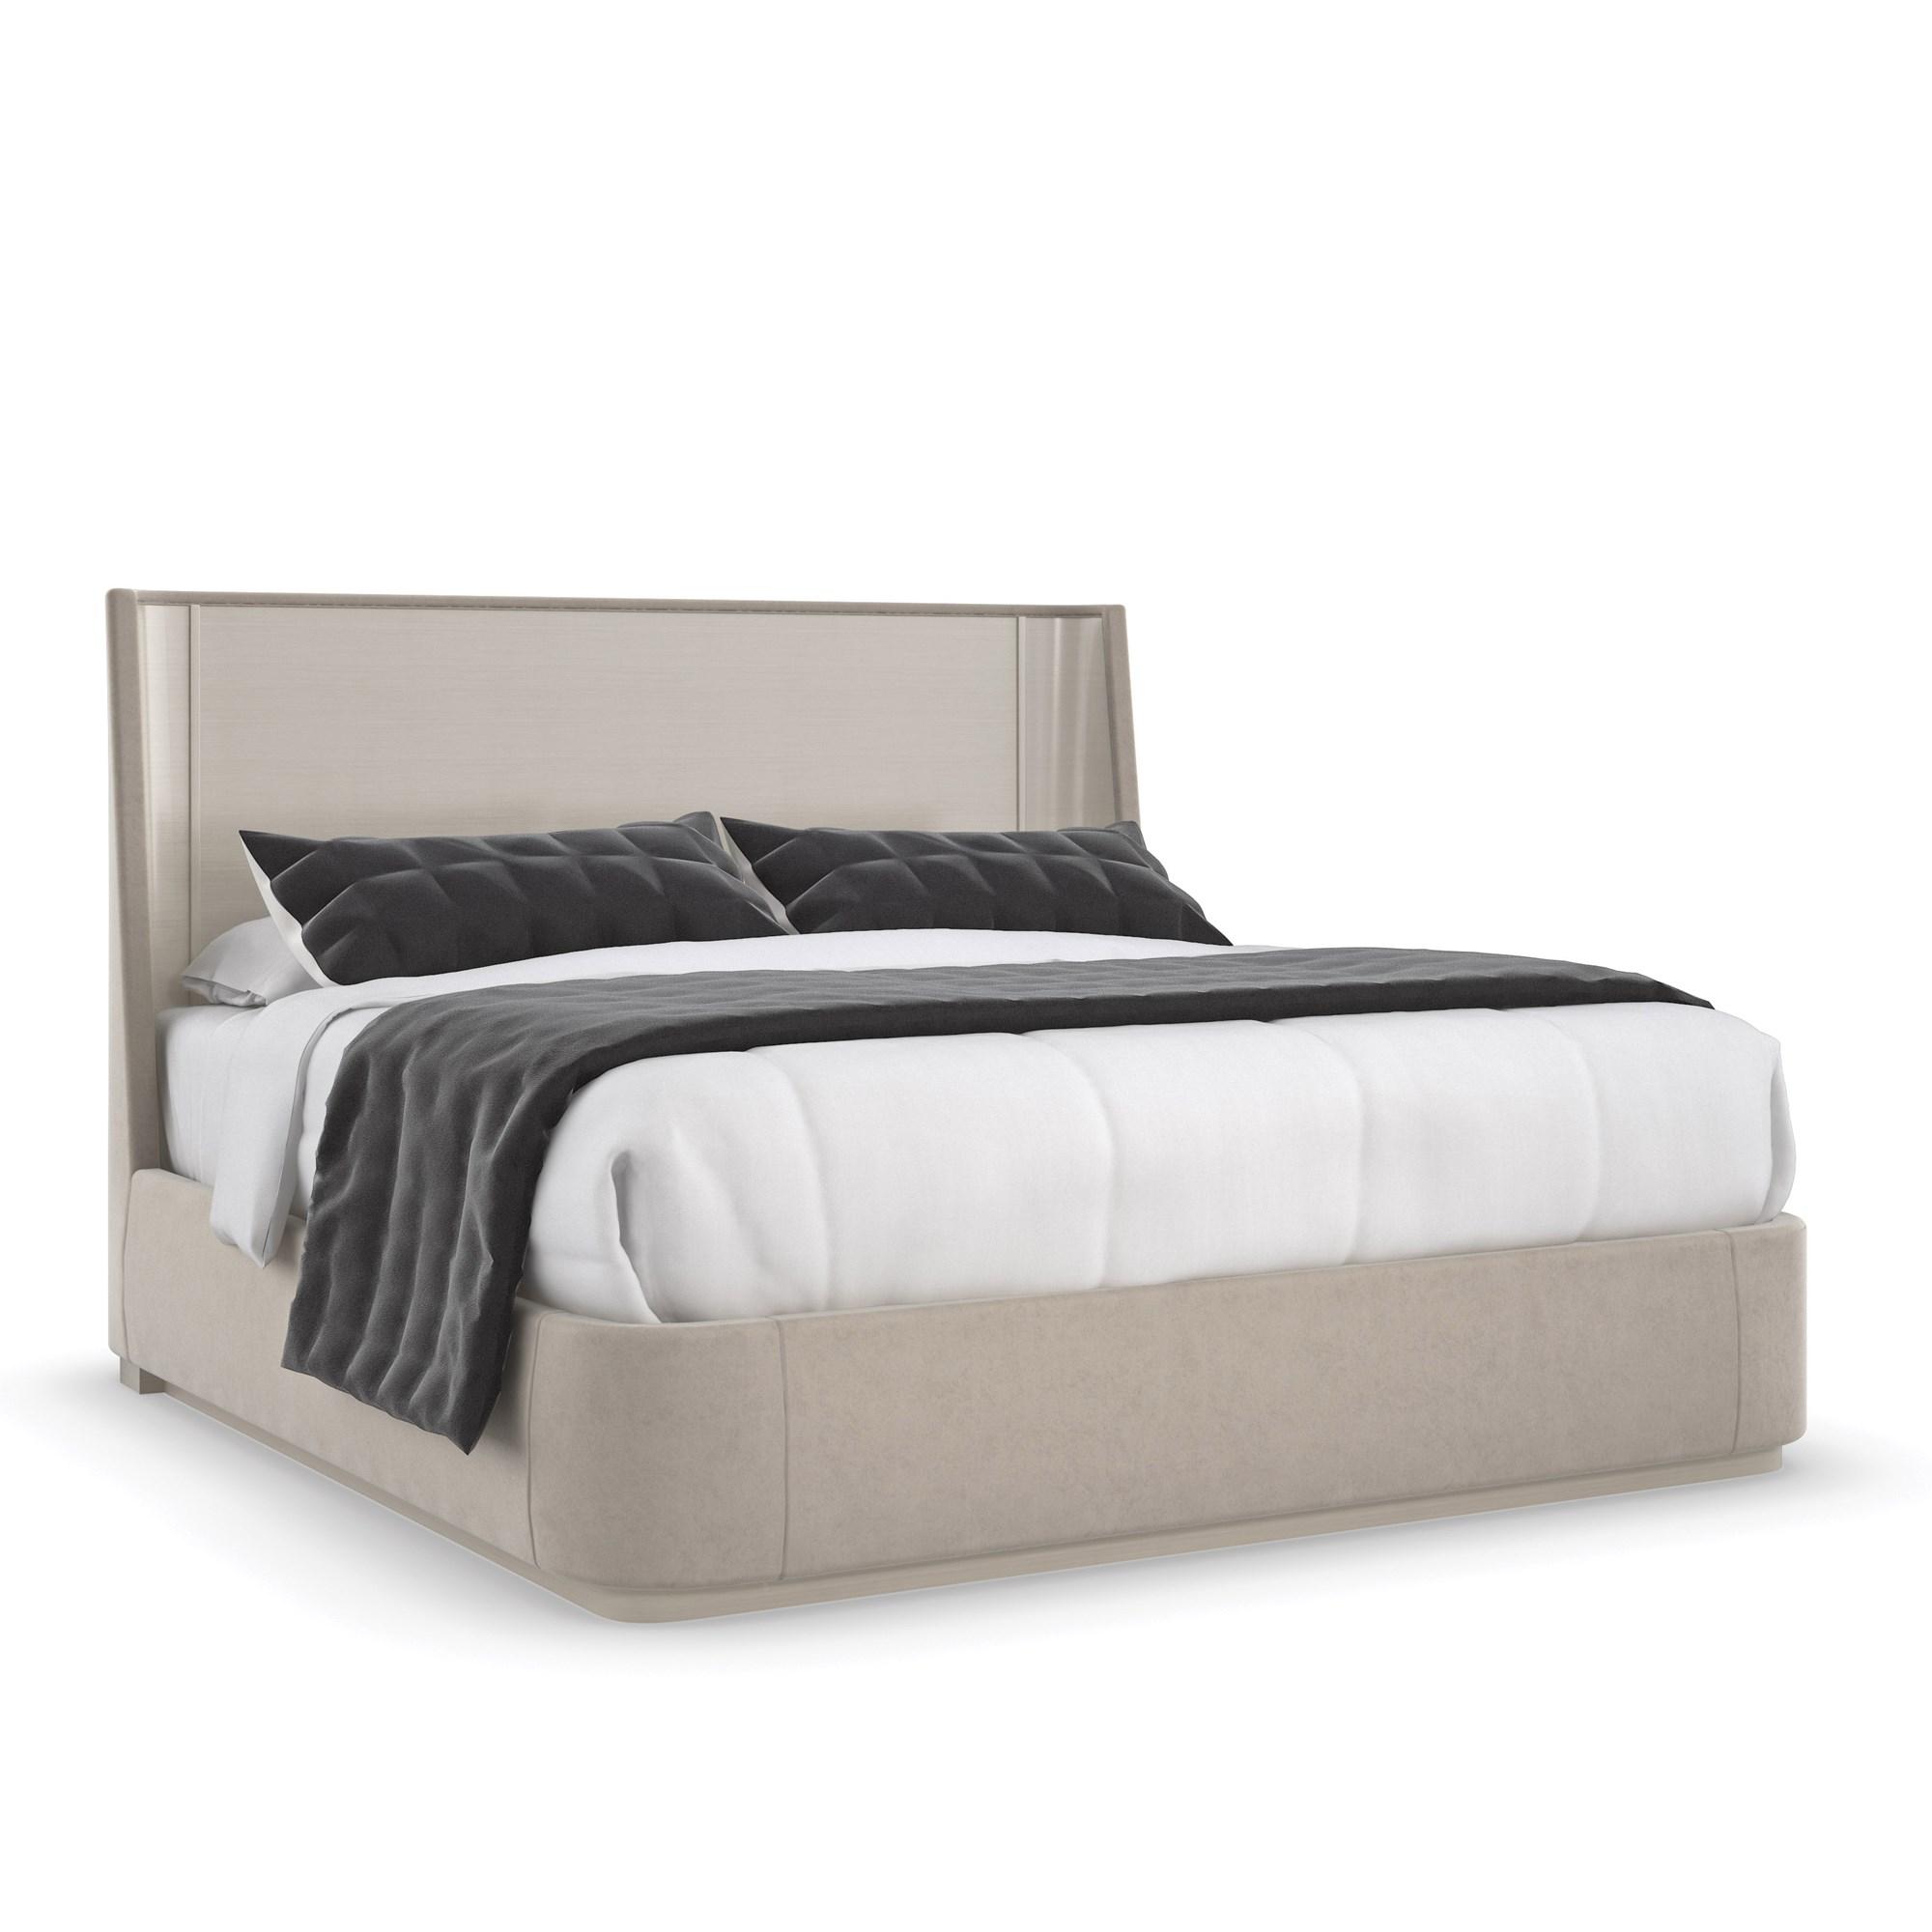 Contemporary Platform Bed DA VITA PLATFORM BED M133-421-102 in Beige Fabric